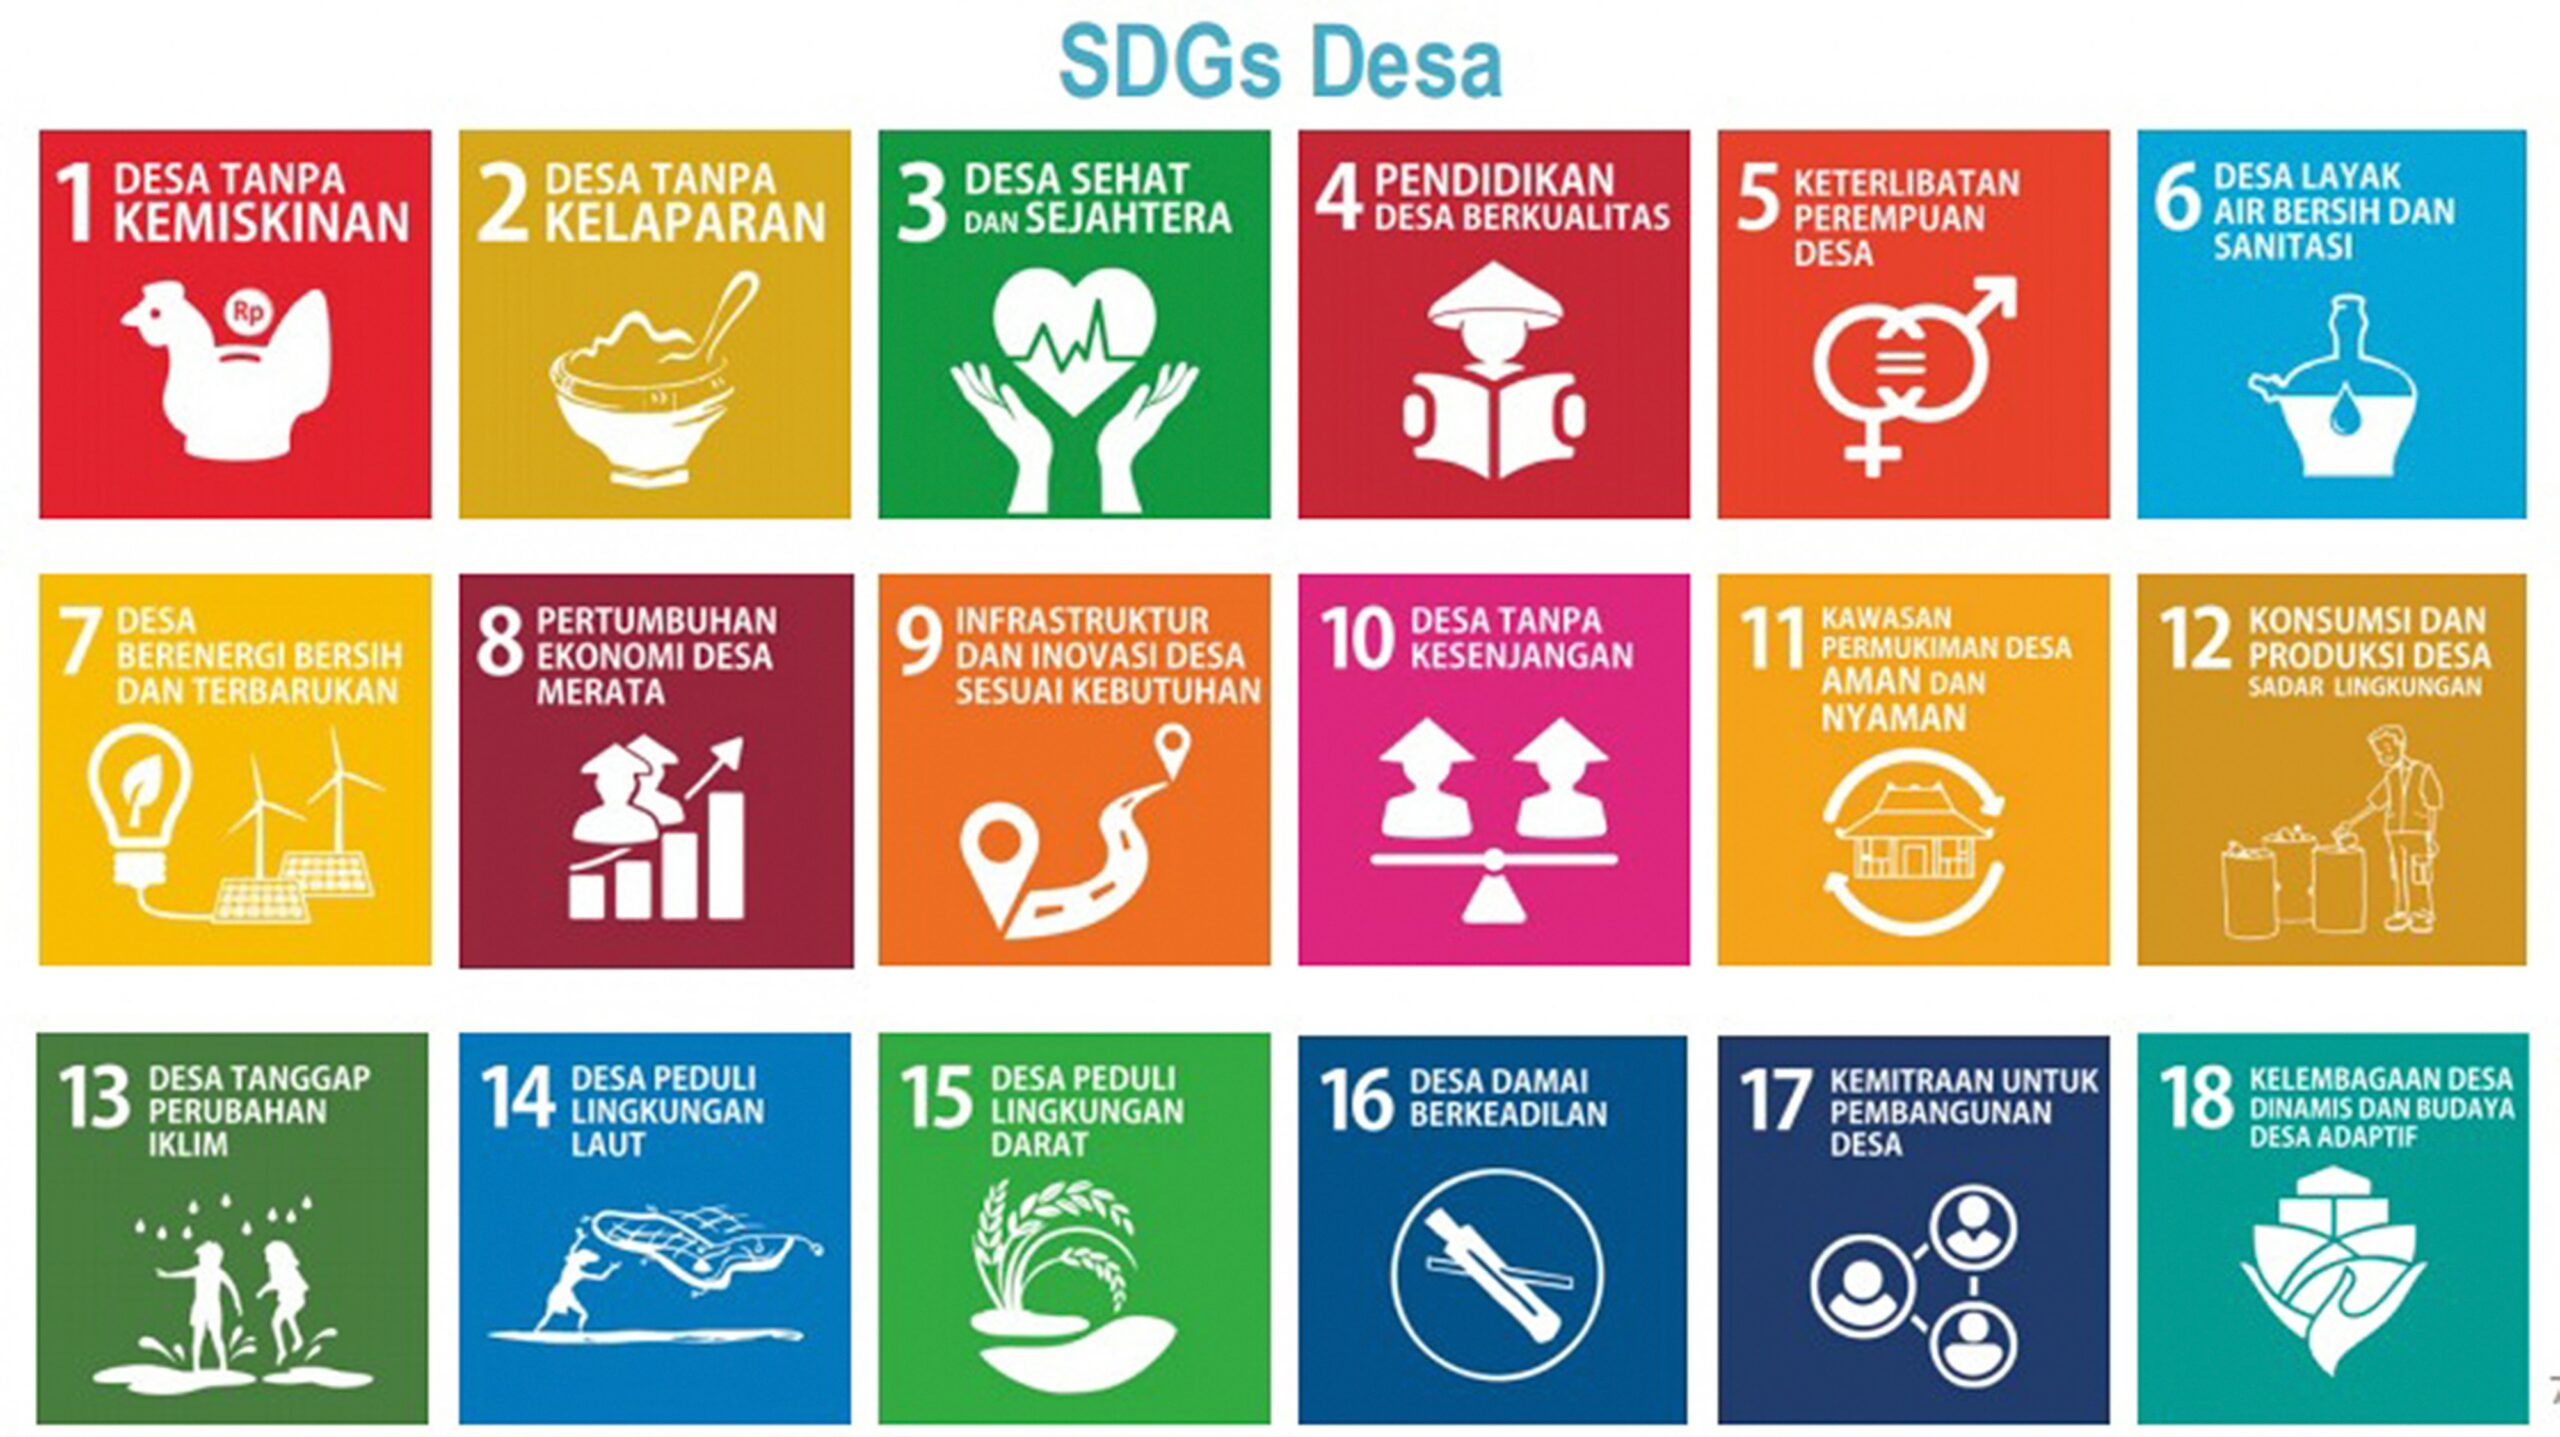 Melalui SDGs Desa, Semua Program Pemerintah Akan Tepat Sasaran - Desapedia